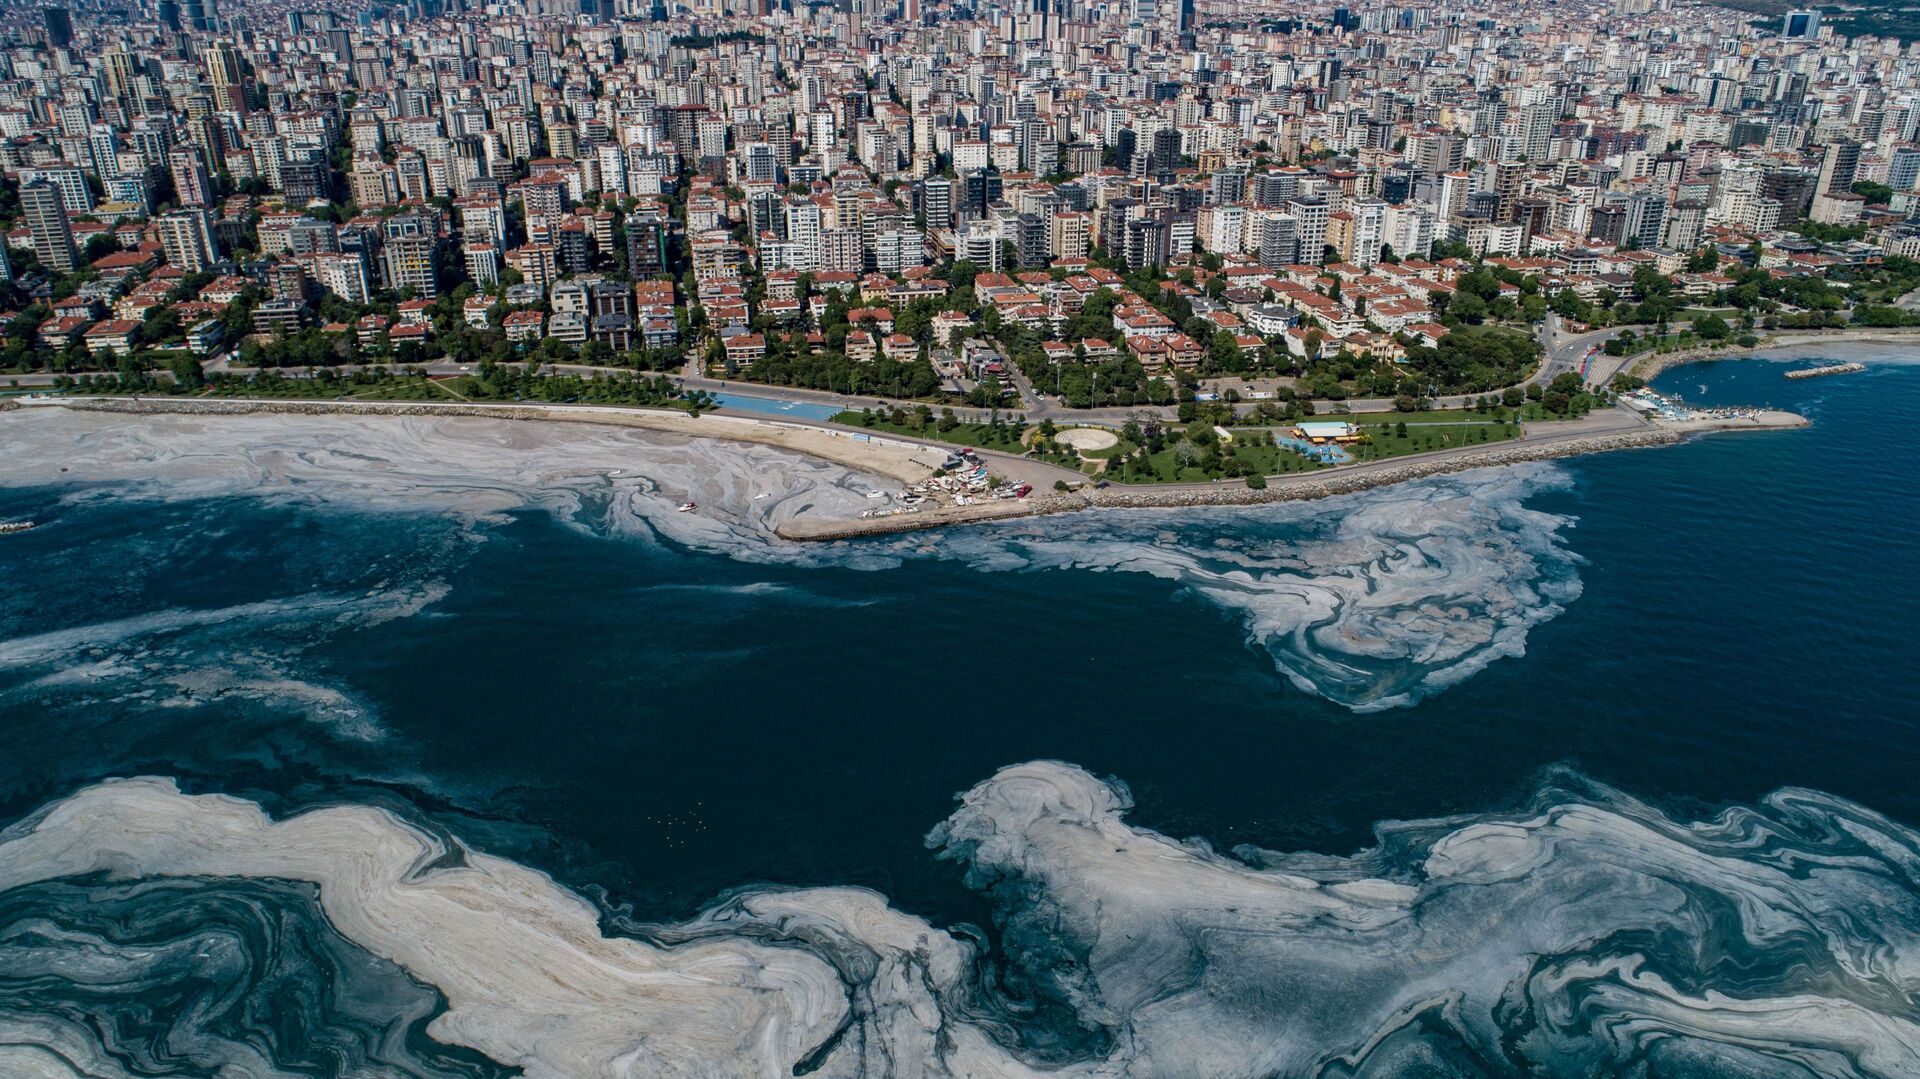 لعاب بحر مرمرة في اسطنبول، تركيا 6 يونيو 2021 - سبوتنيك عربي, 1920, 11.04.2022